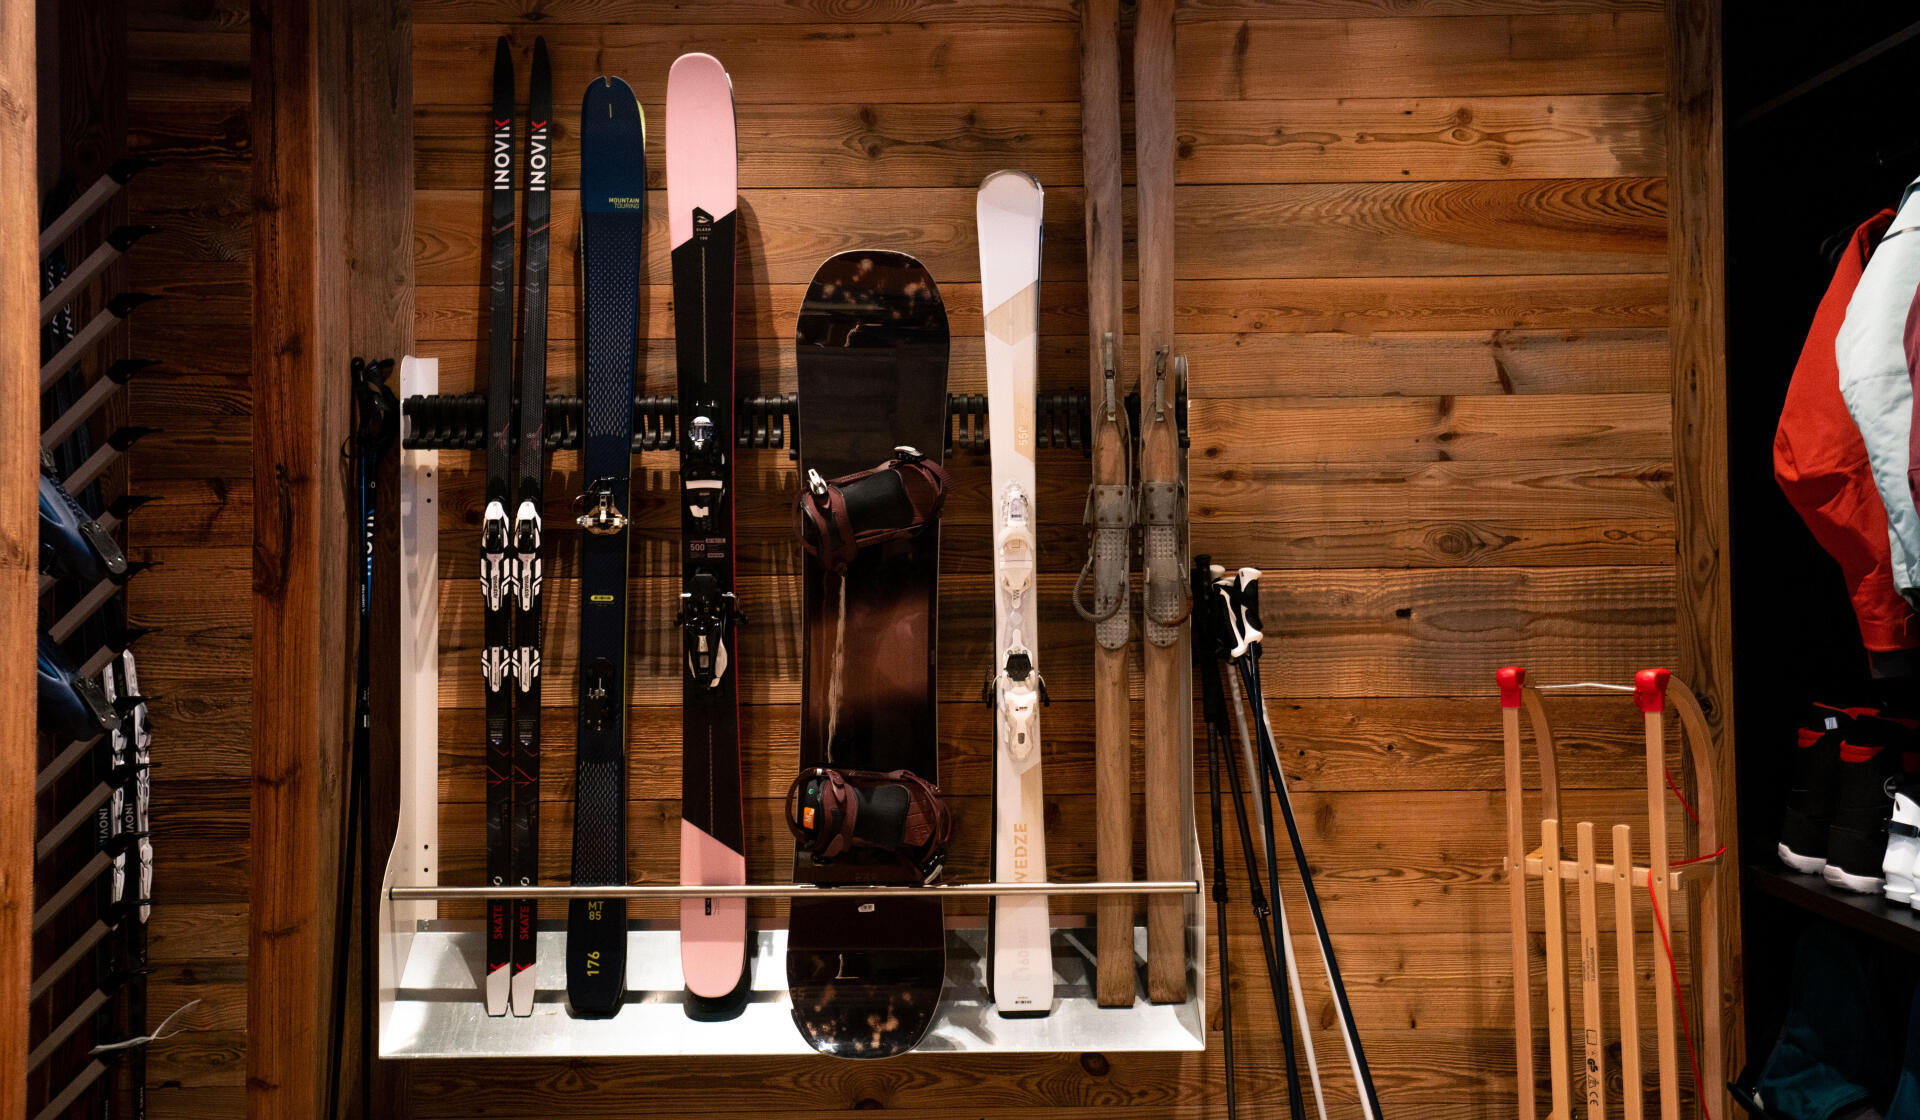 Como fazer manutenção dos skis de pista sem enceramento?